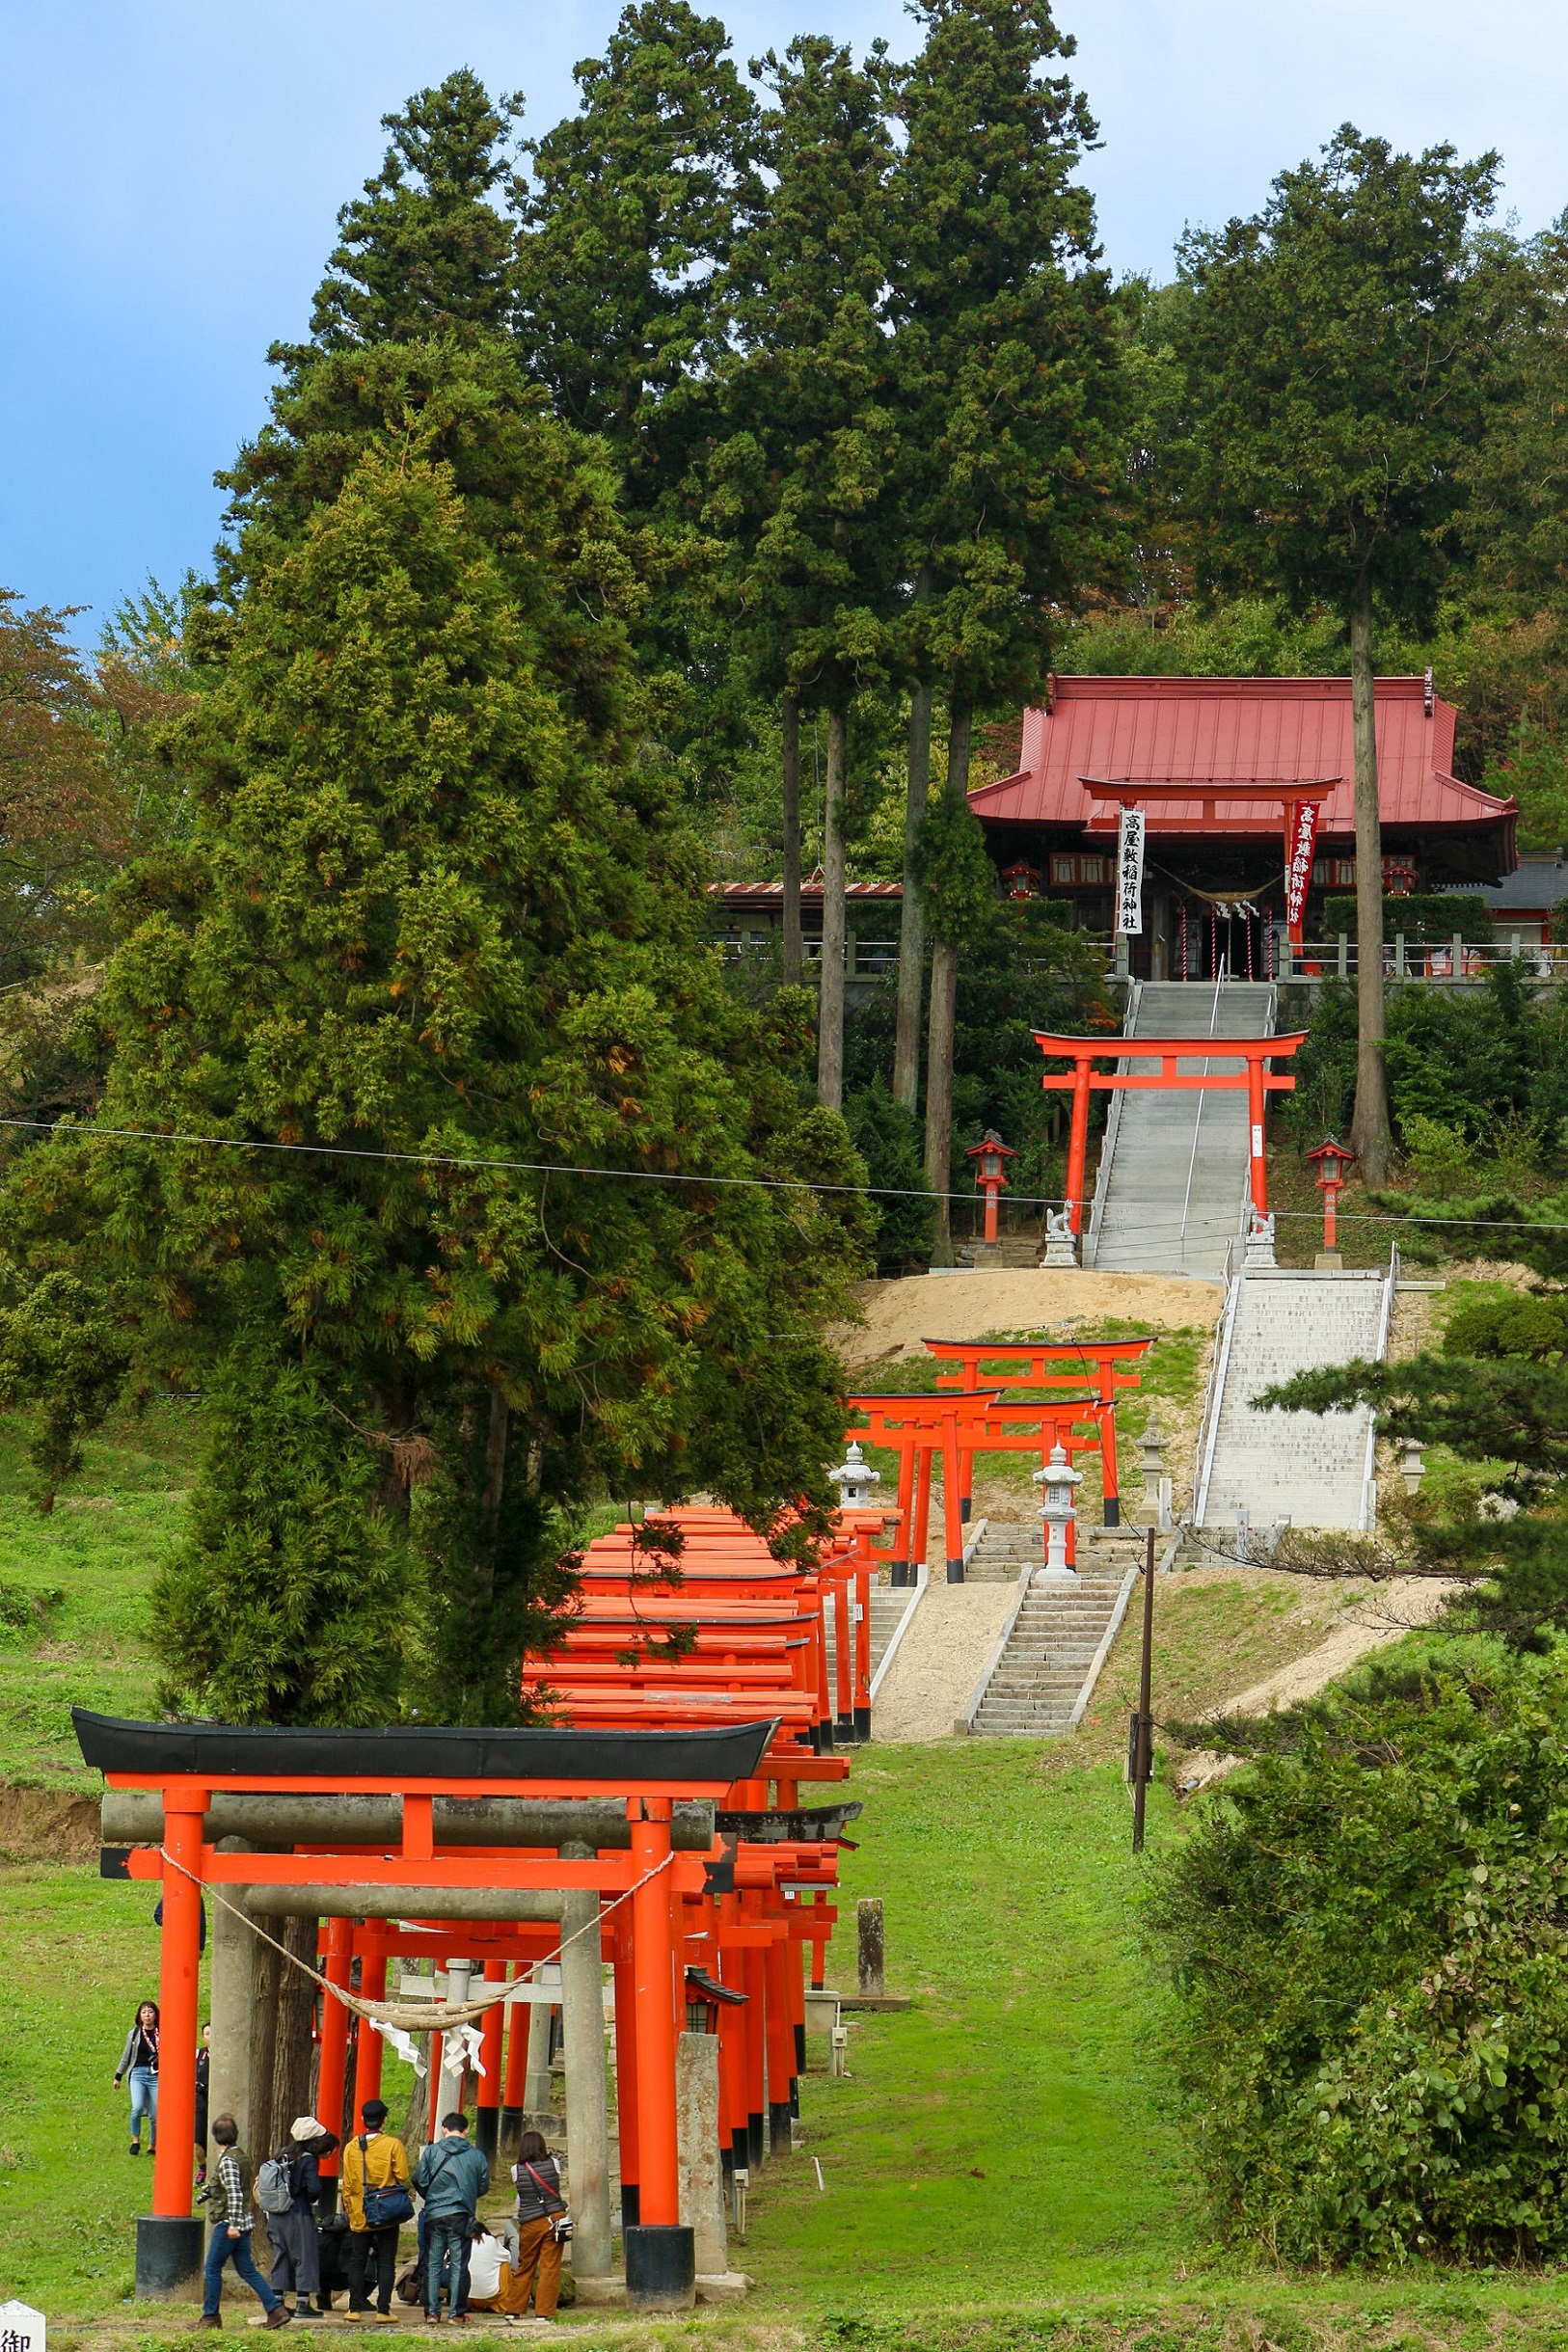 高屋敷稲荷神社